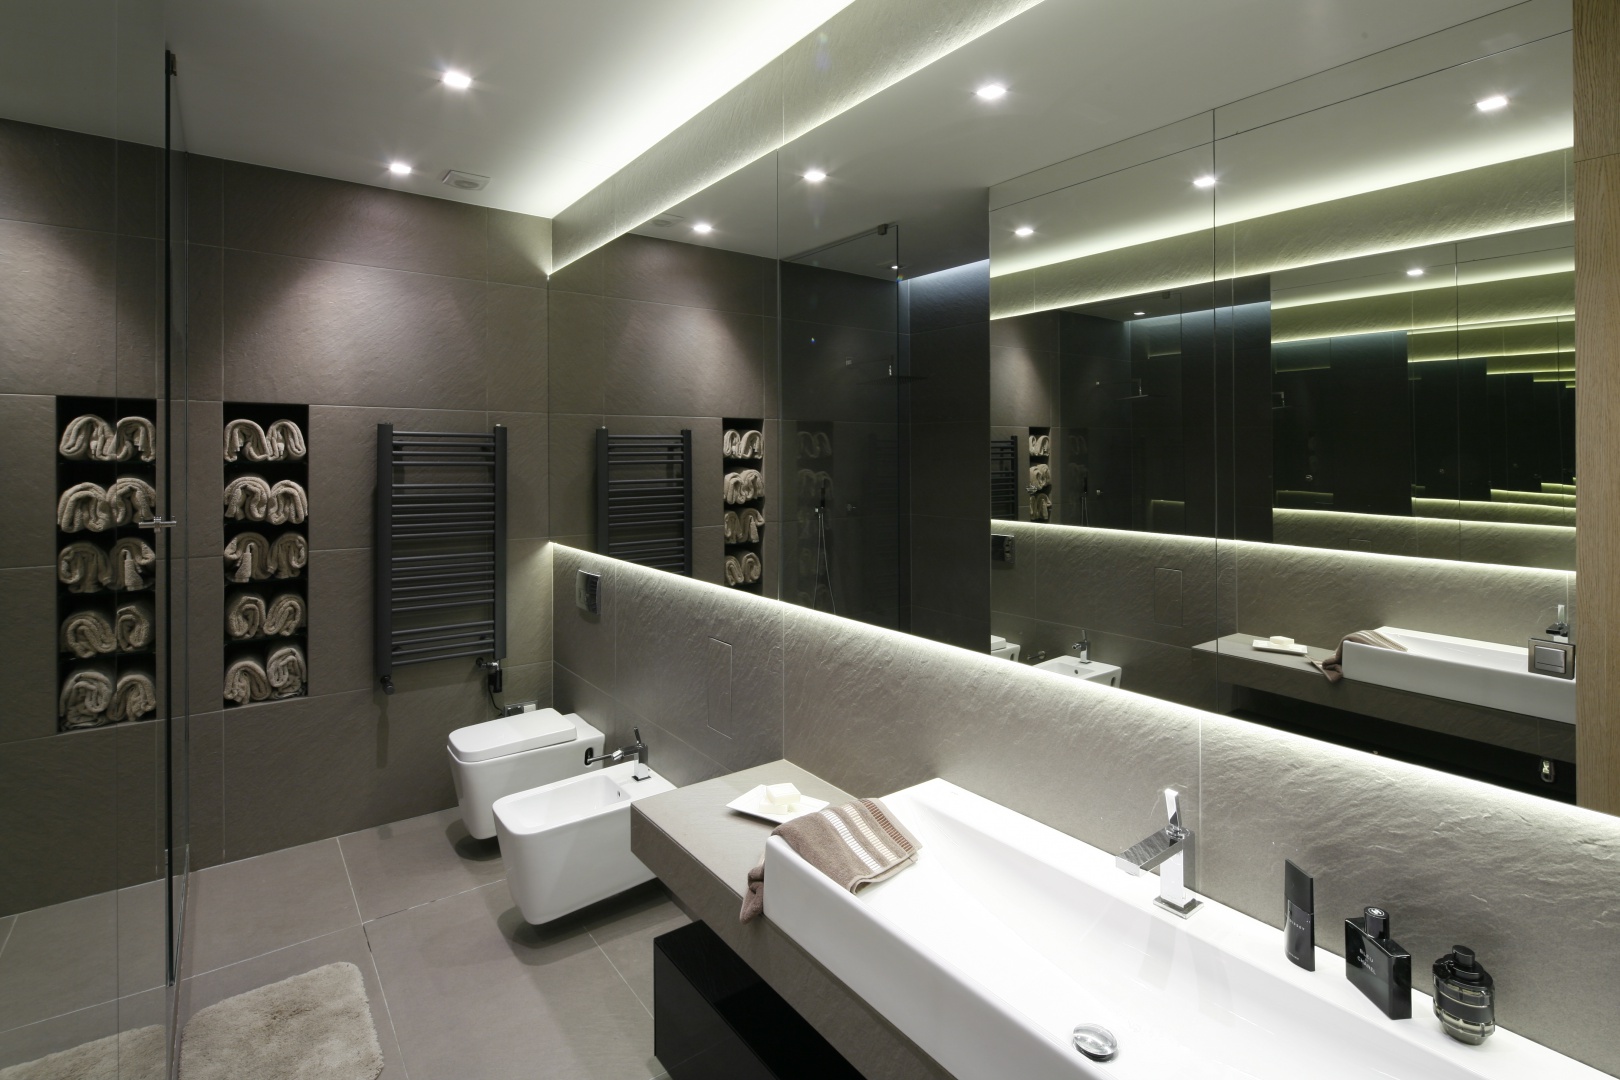 W minimalistycznej, szarej łazience duza role odgrywa światło, a także duże lustrzane powierzchnie. Projekt: Małgorzata Muc, Joanna Scott. Fot. Bartosz Jarosz